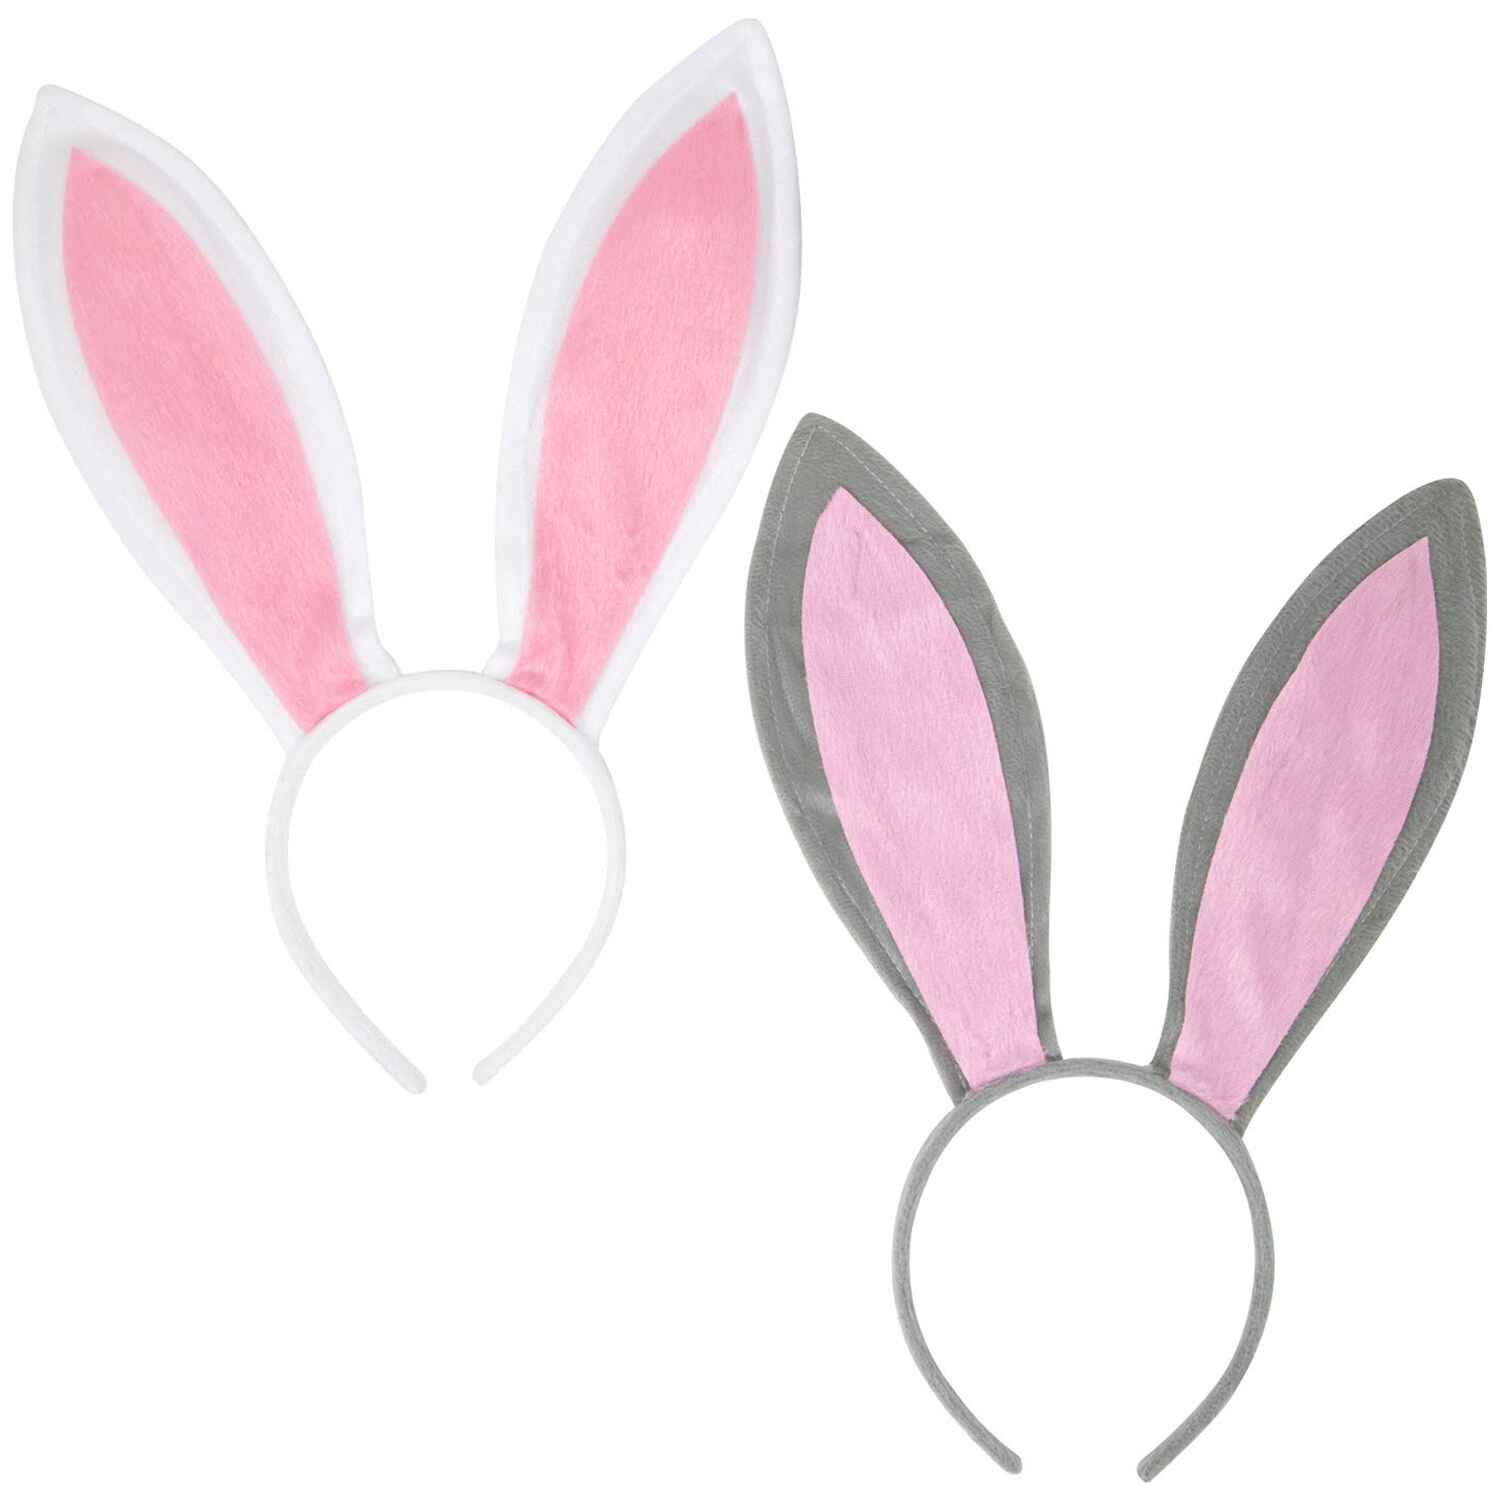 Funcredible Bunny Ears Headband - Plush Easter Rabbit Ears 